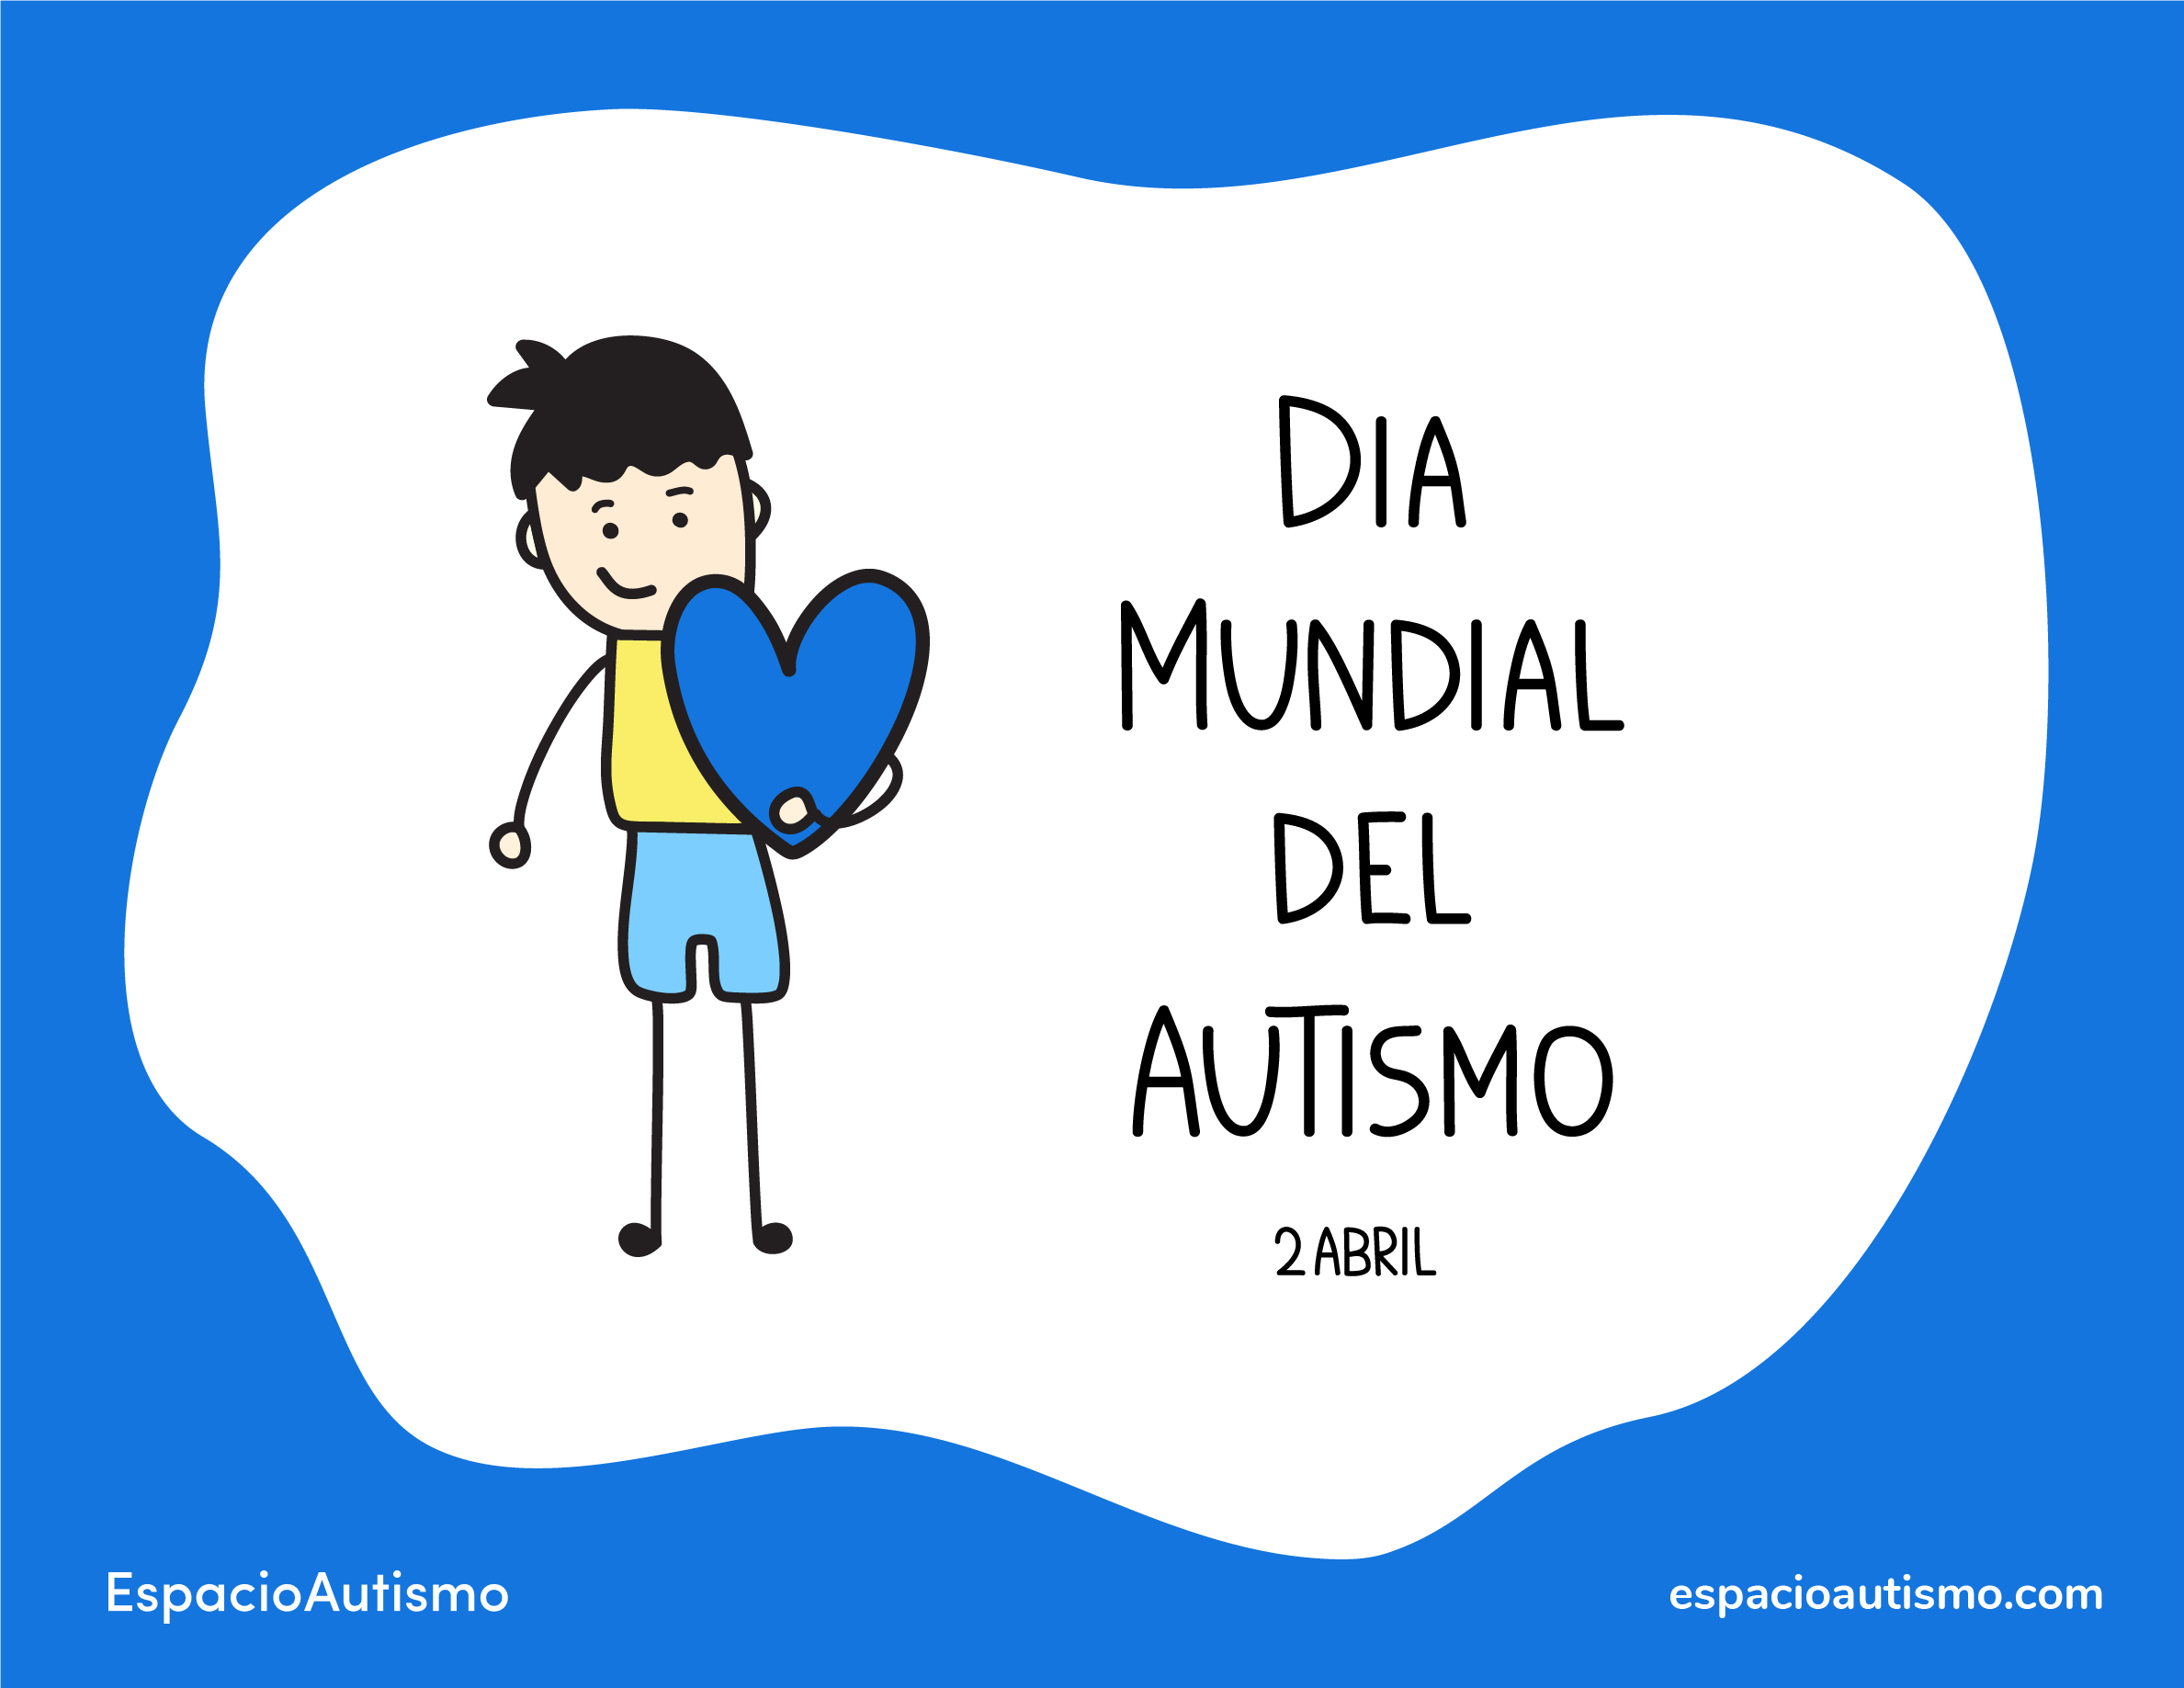 Día mundial de Concienciación sobre el autismo